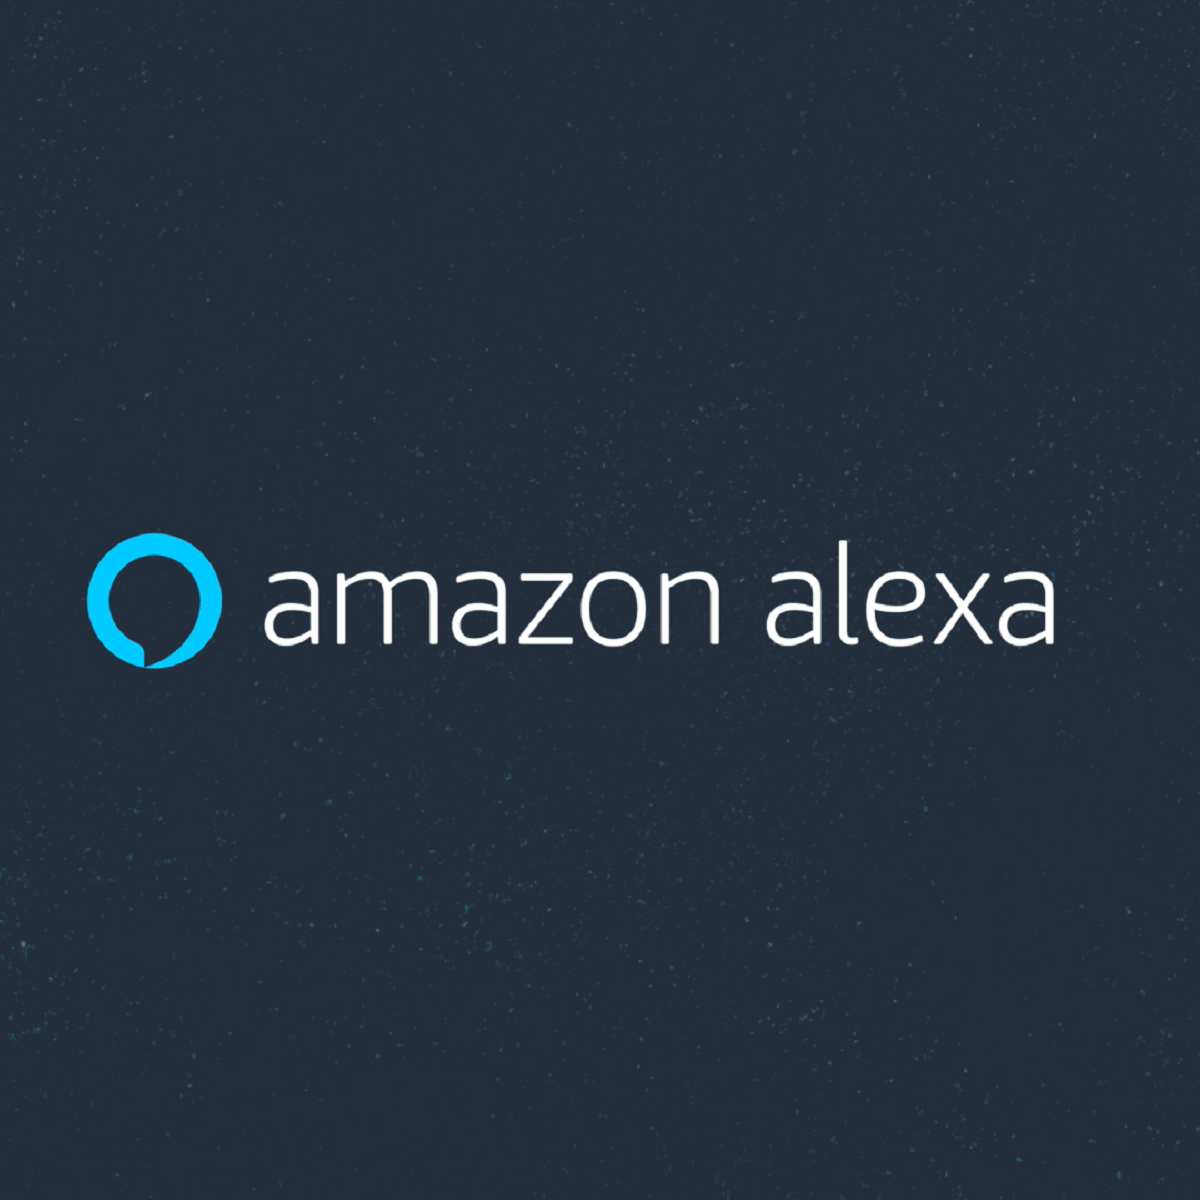 AV receivers with Amazon Alexa